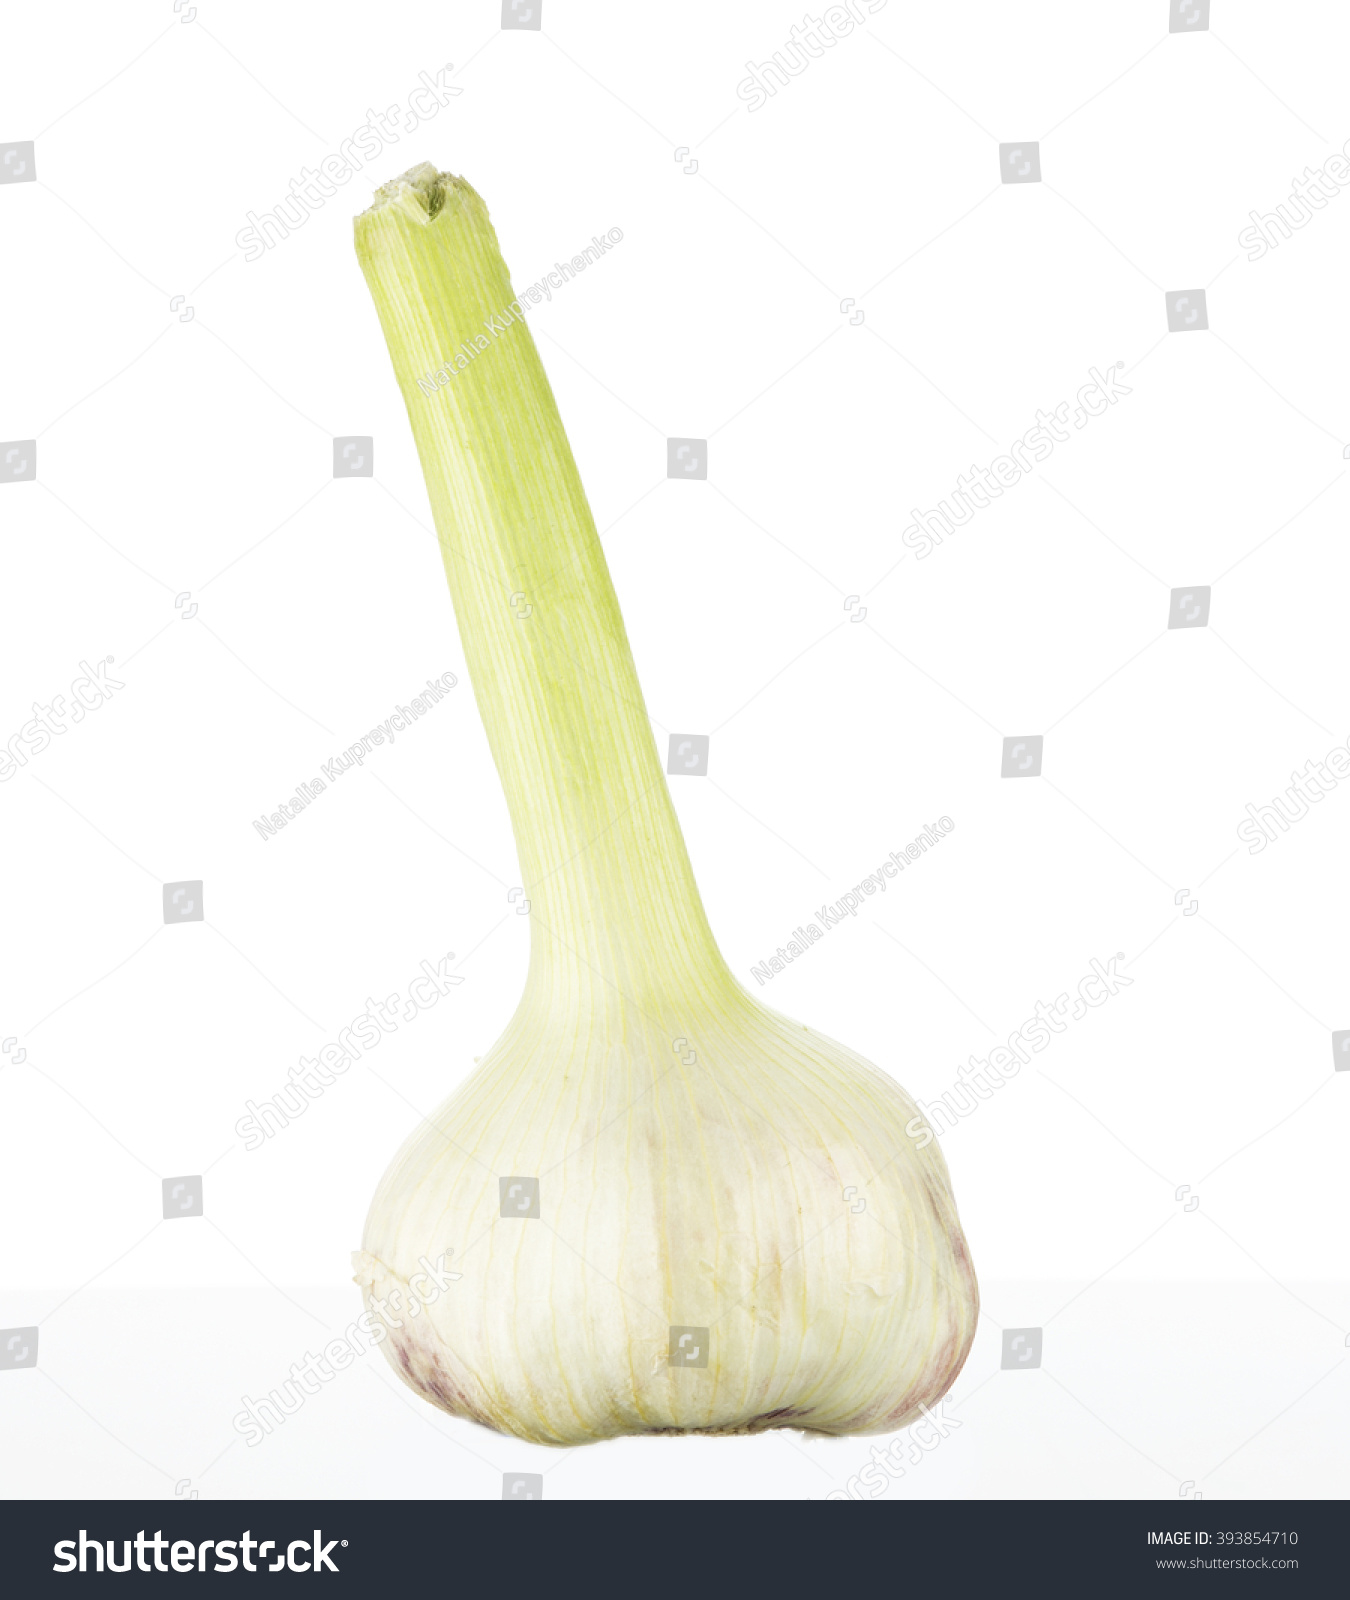 New Garlic Isolated On White Background Stock Photo 393854710